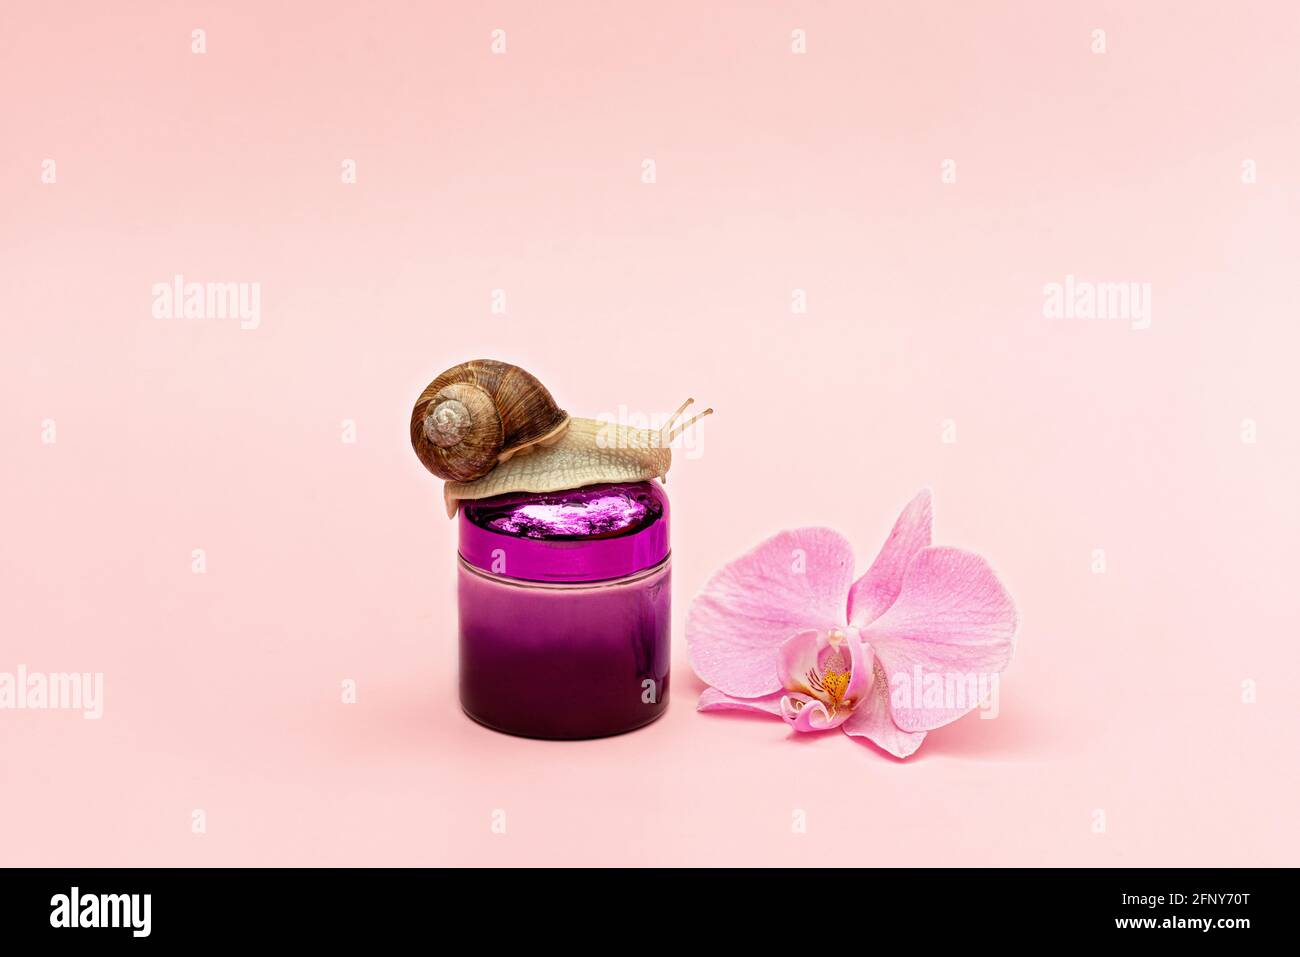 Glas mit kosmetischer Creme zur Hautverjüngung auf einem rosa Hintergrund mit Schnecke und Orchideenblüte, Schneckenschleimcreme, Hautfeuchtigkeit, Schönheit, Gesundheit, sp Stockfoto